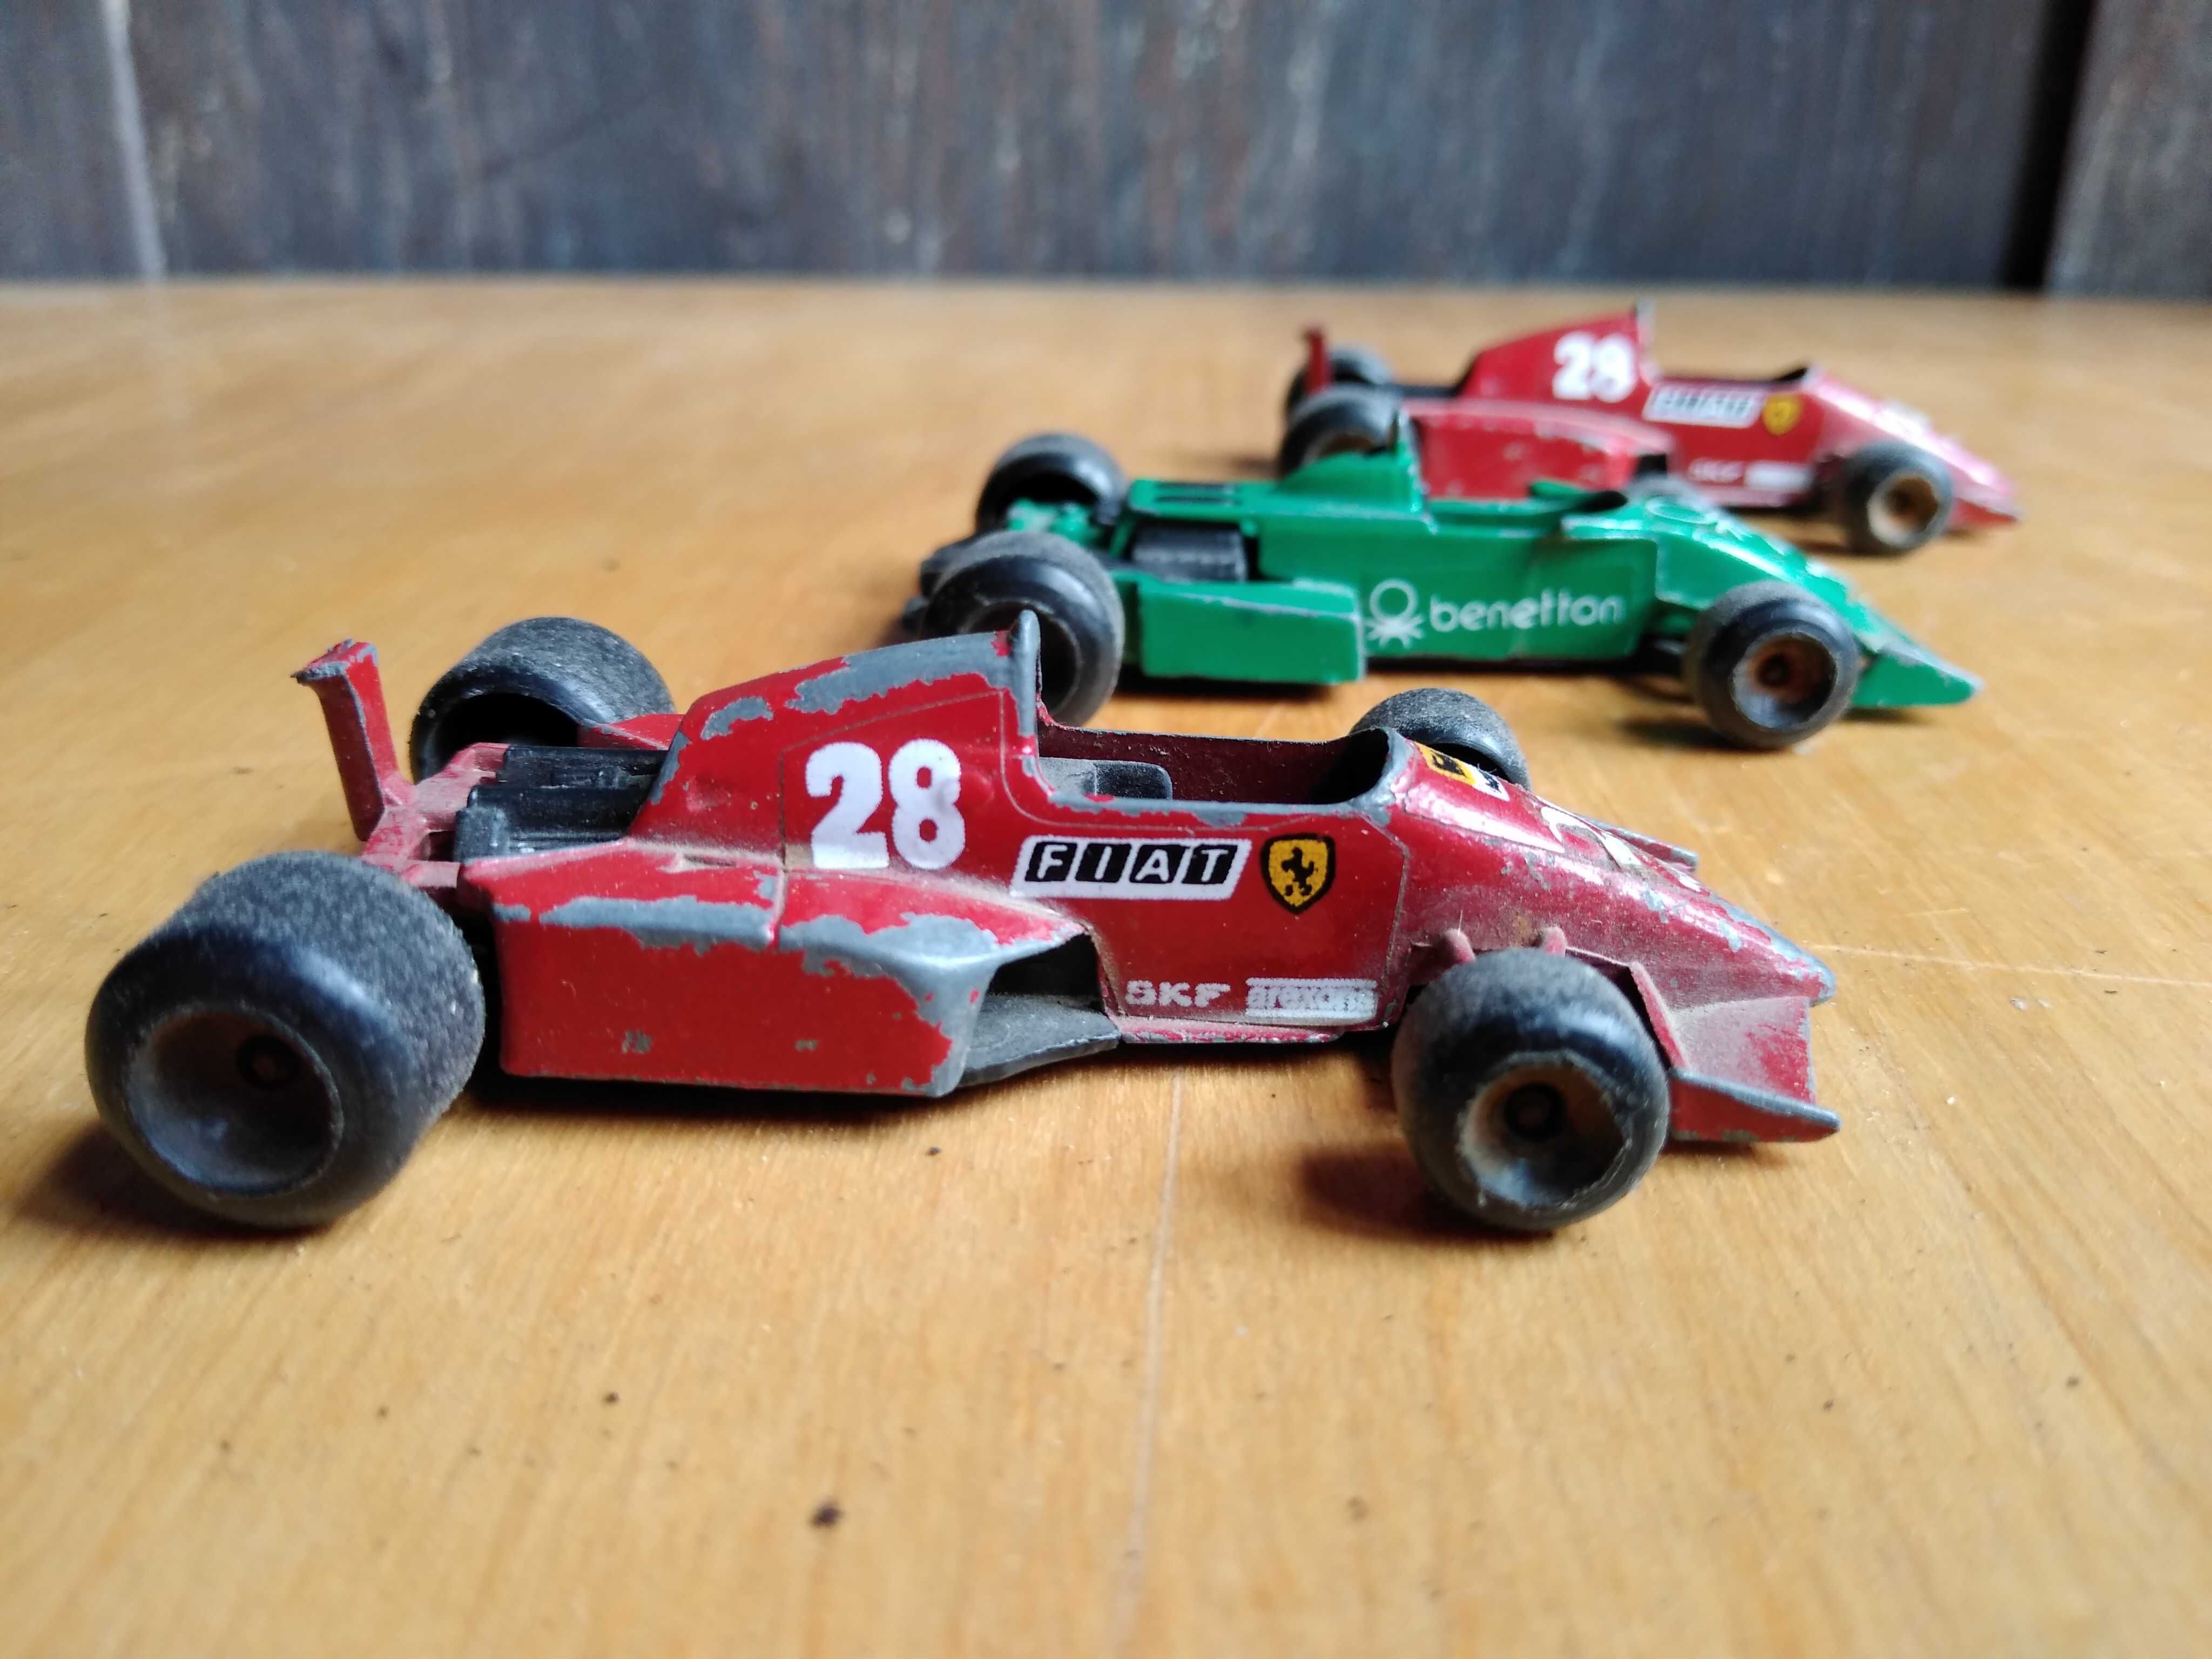 Autko resorak Polistil bolid F1 Ferrari i Tyrrell zabytek PRL